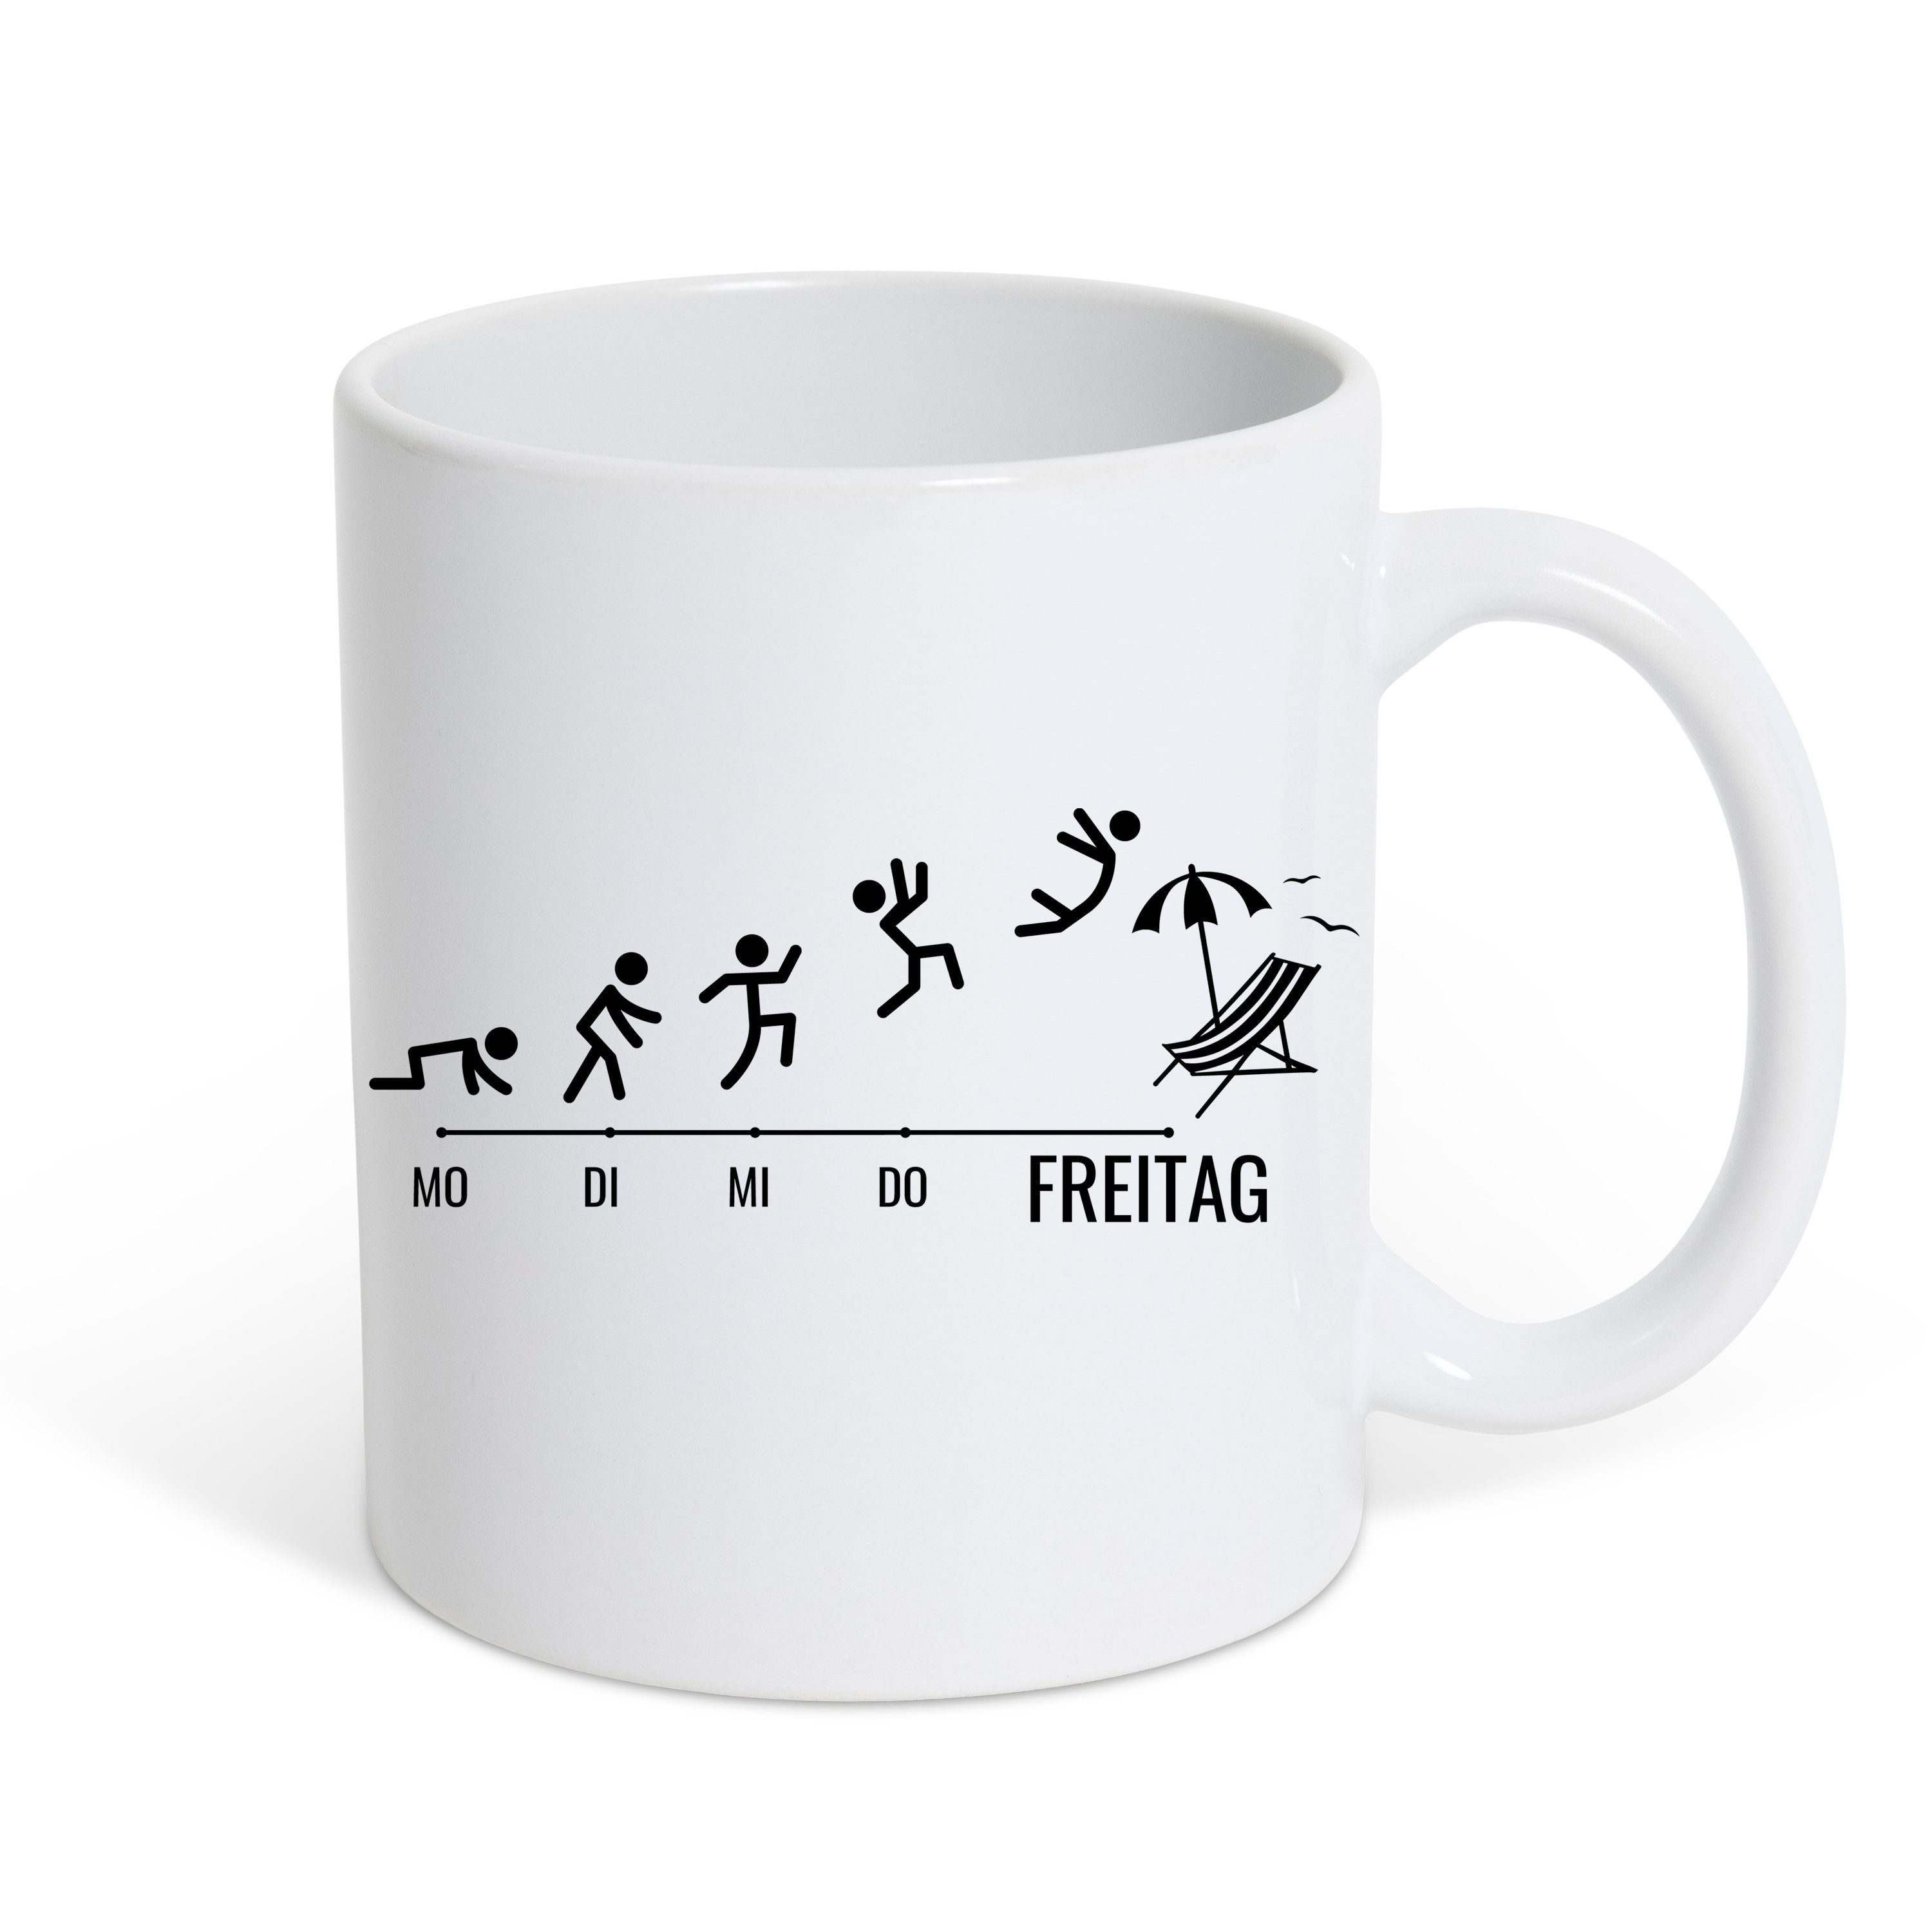 Youth Designz Tasse Freitag Kaffeetasse Geschenk, Keramik, mit lustigem Print Weiß